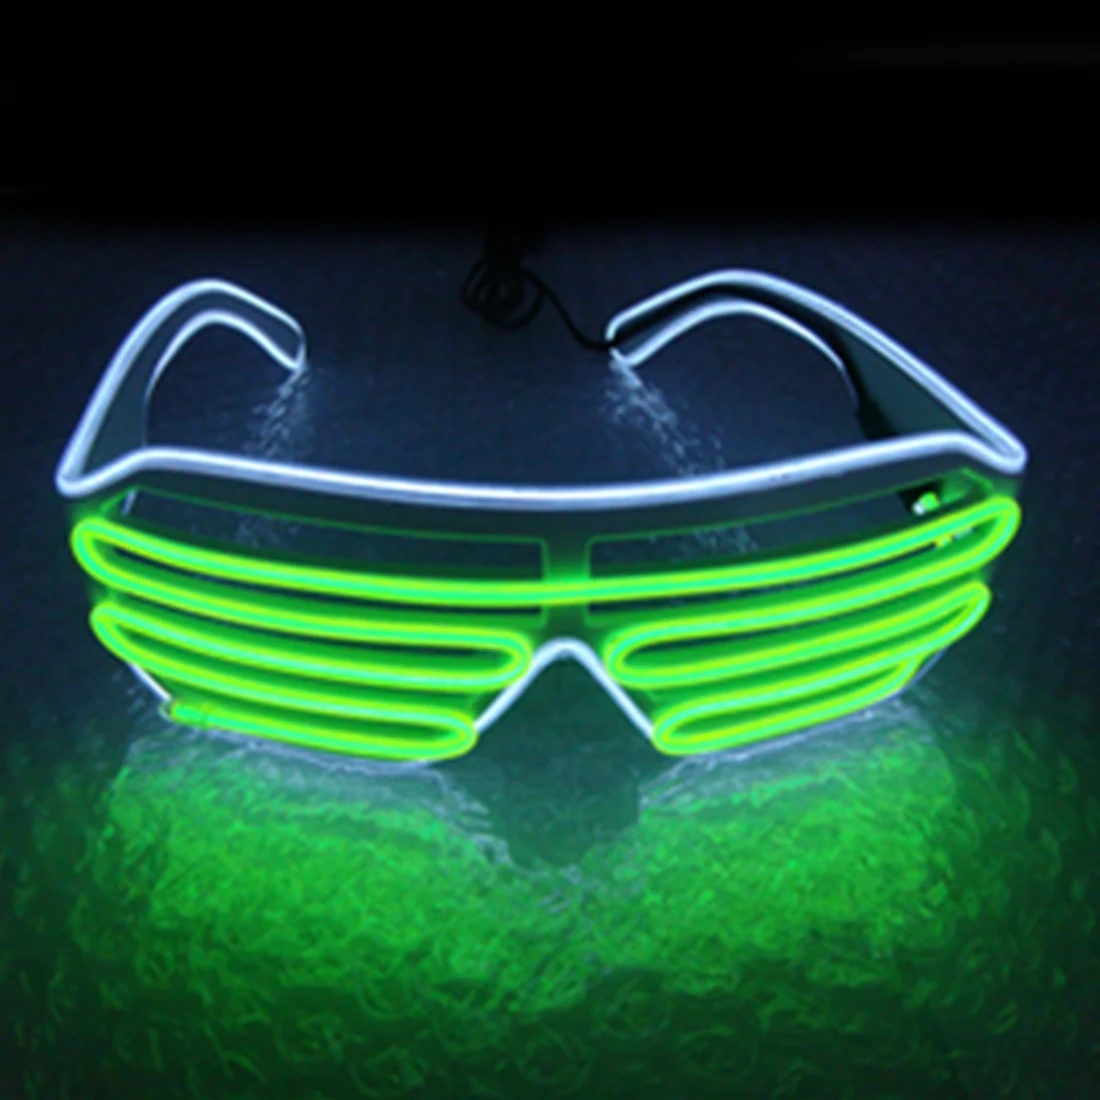 2019two-цветные жалюзи Режимы вспышки EL Flash очки светящееся Освещение красочные светящиеся DJ очки Классические карнавальные танцевальные бар